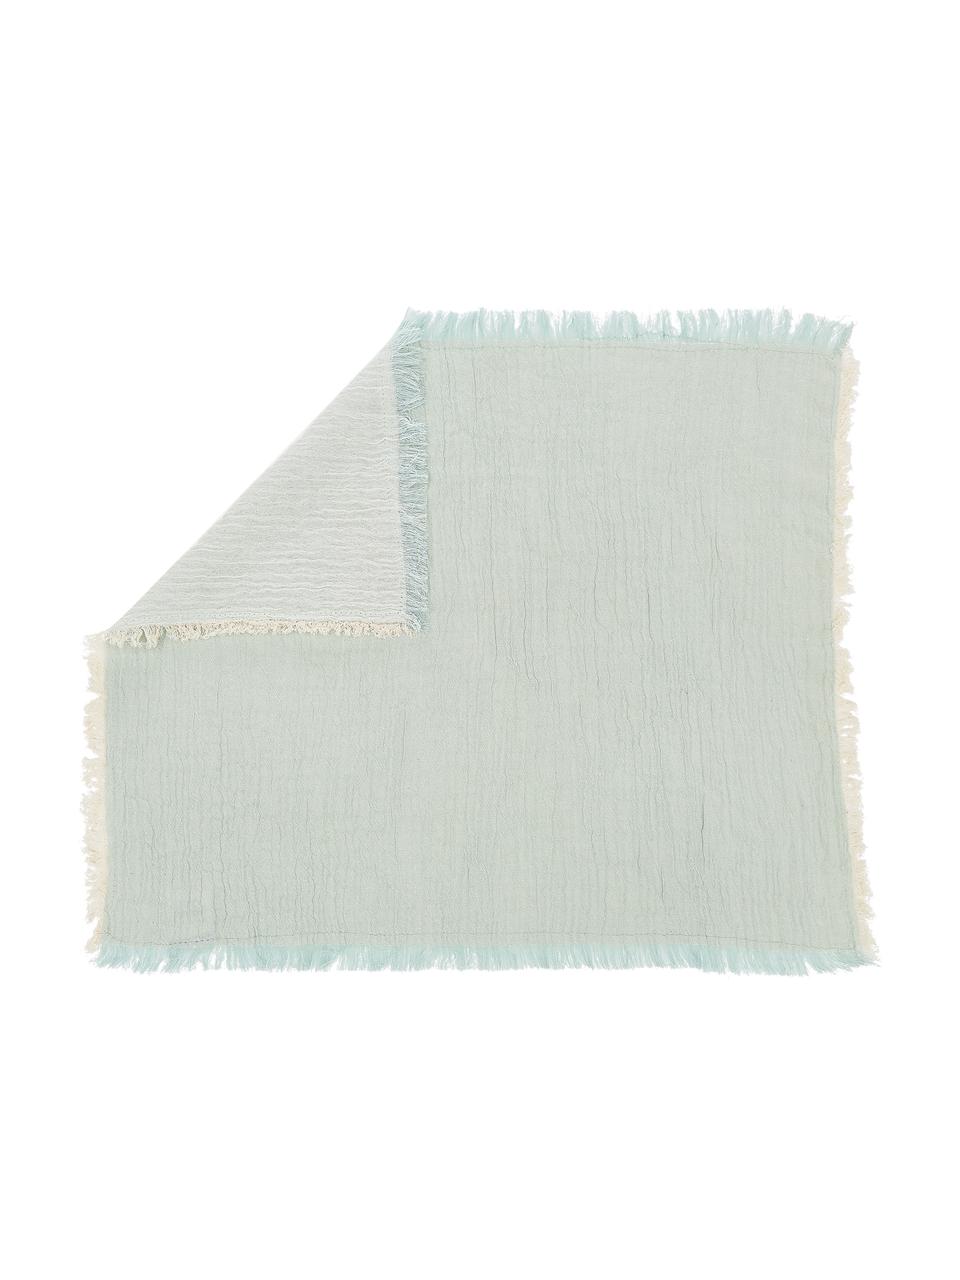 Plátěný ubrousek Layer, 4 ks, 100 % bavlna, Světle zelená, Š 45 cm, D 45 cm